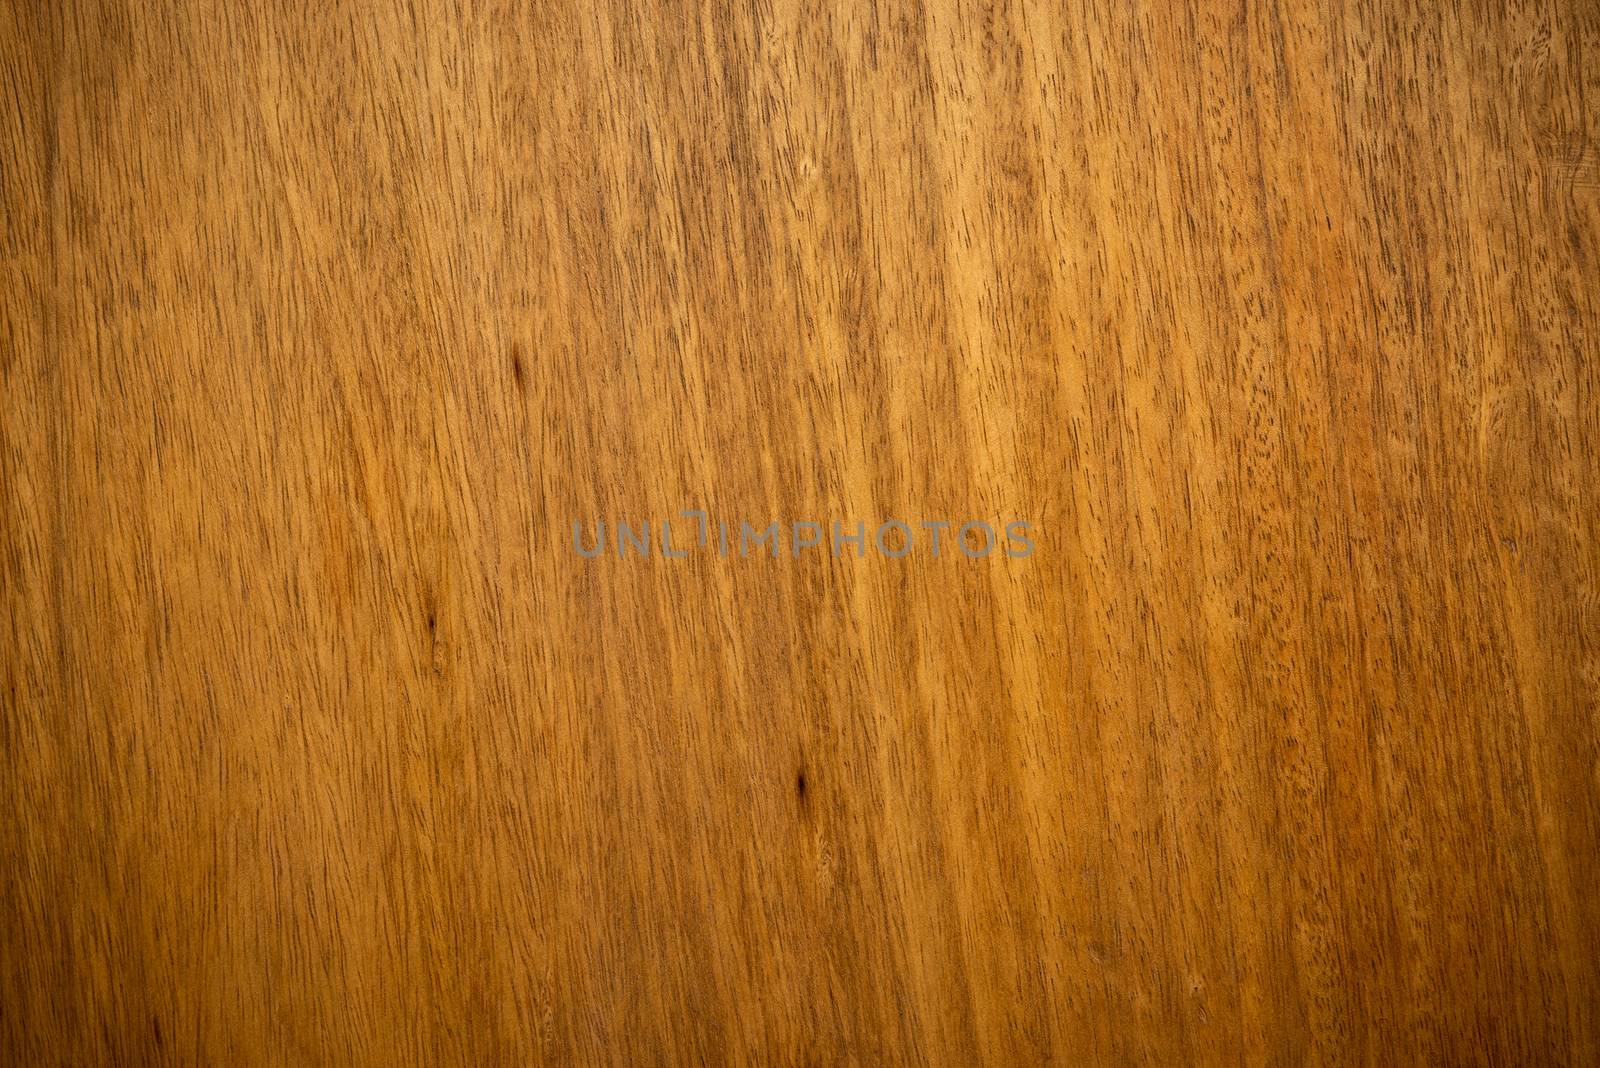 Closeup shot of mango wood texture